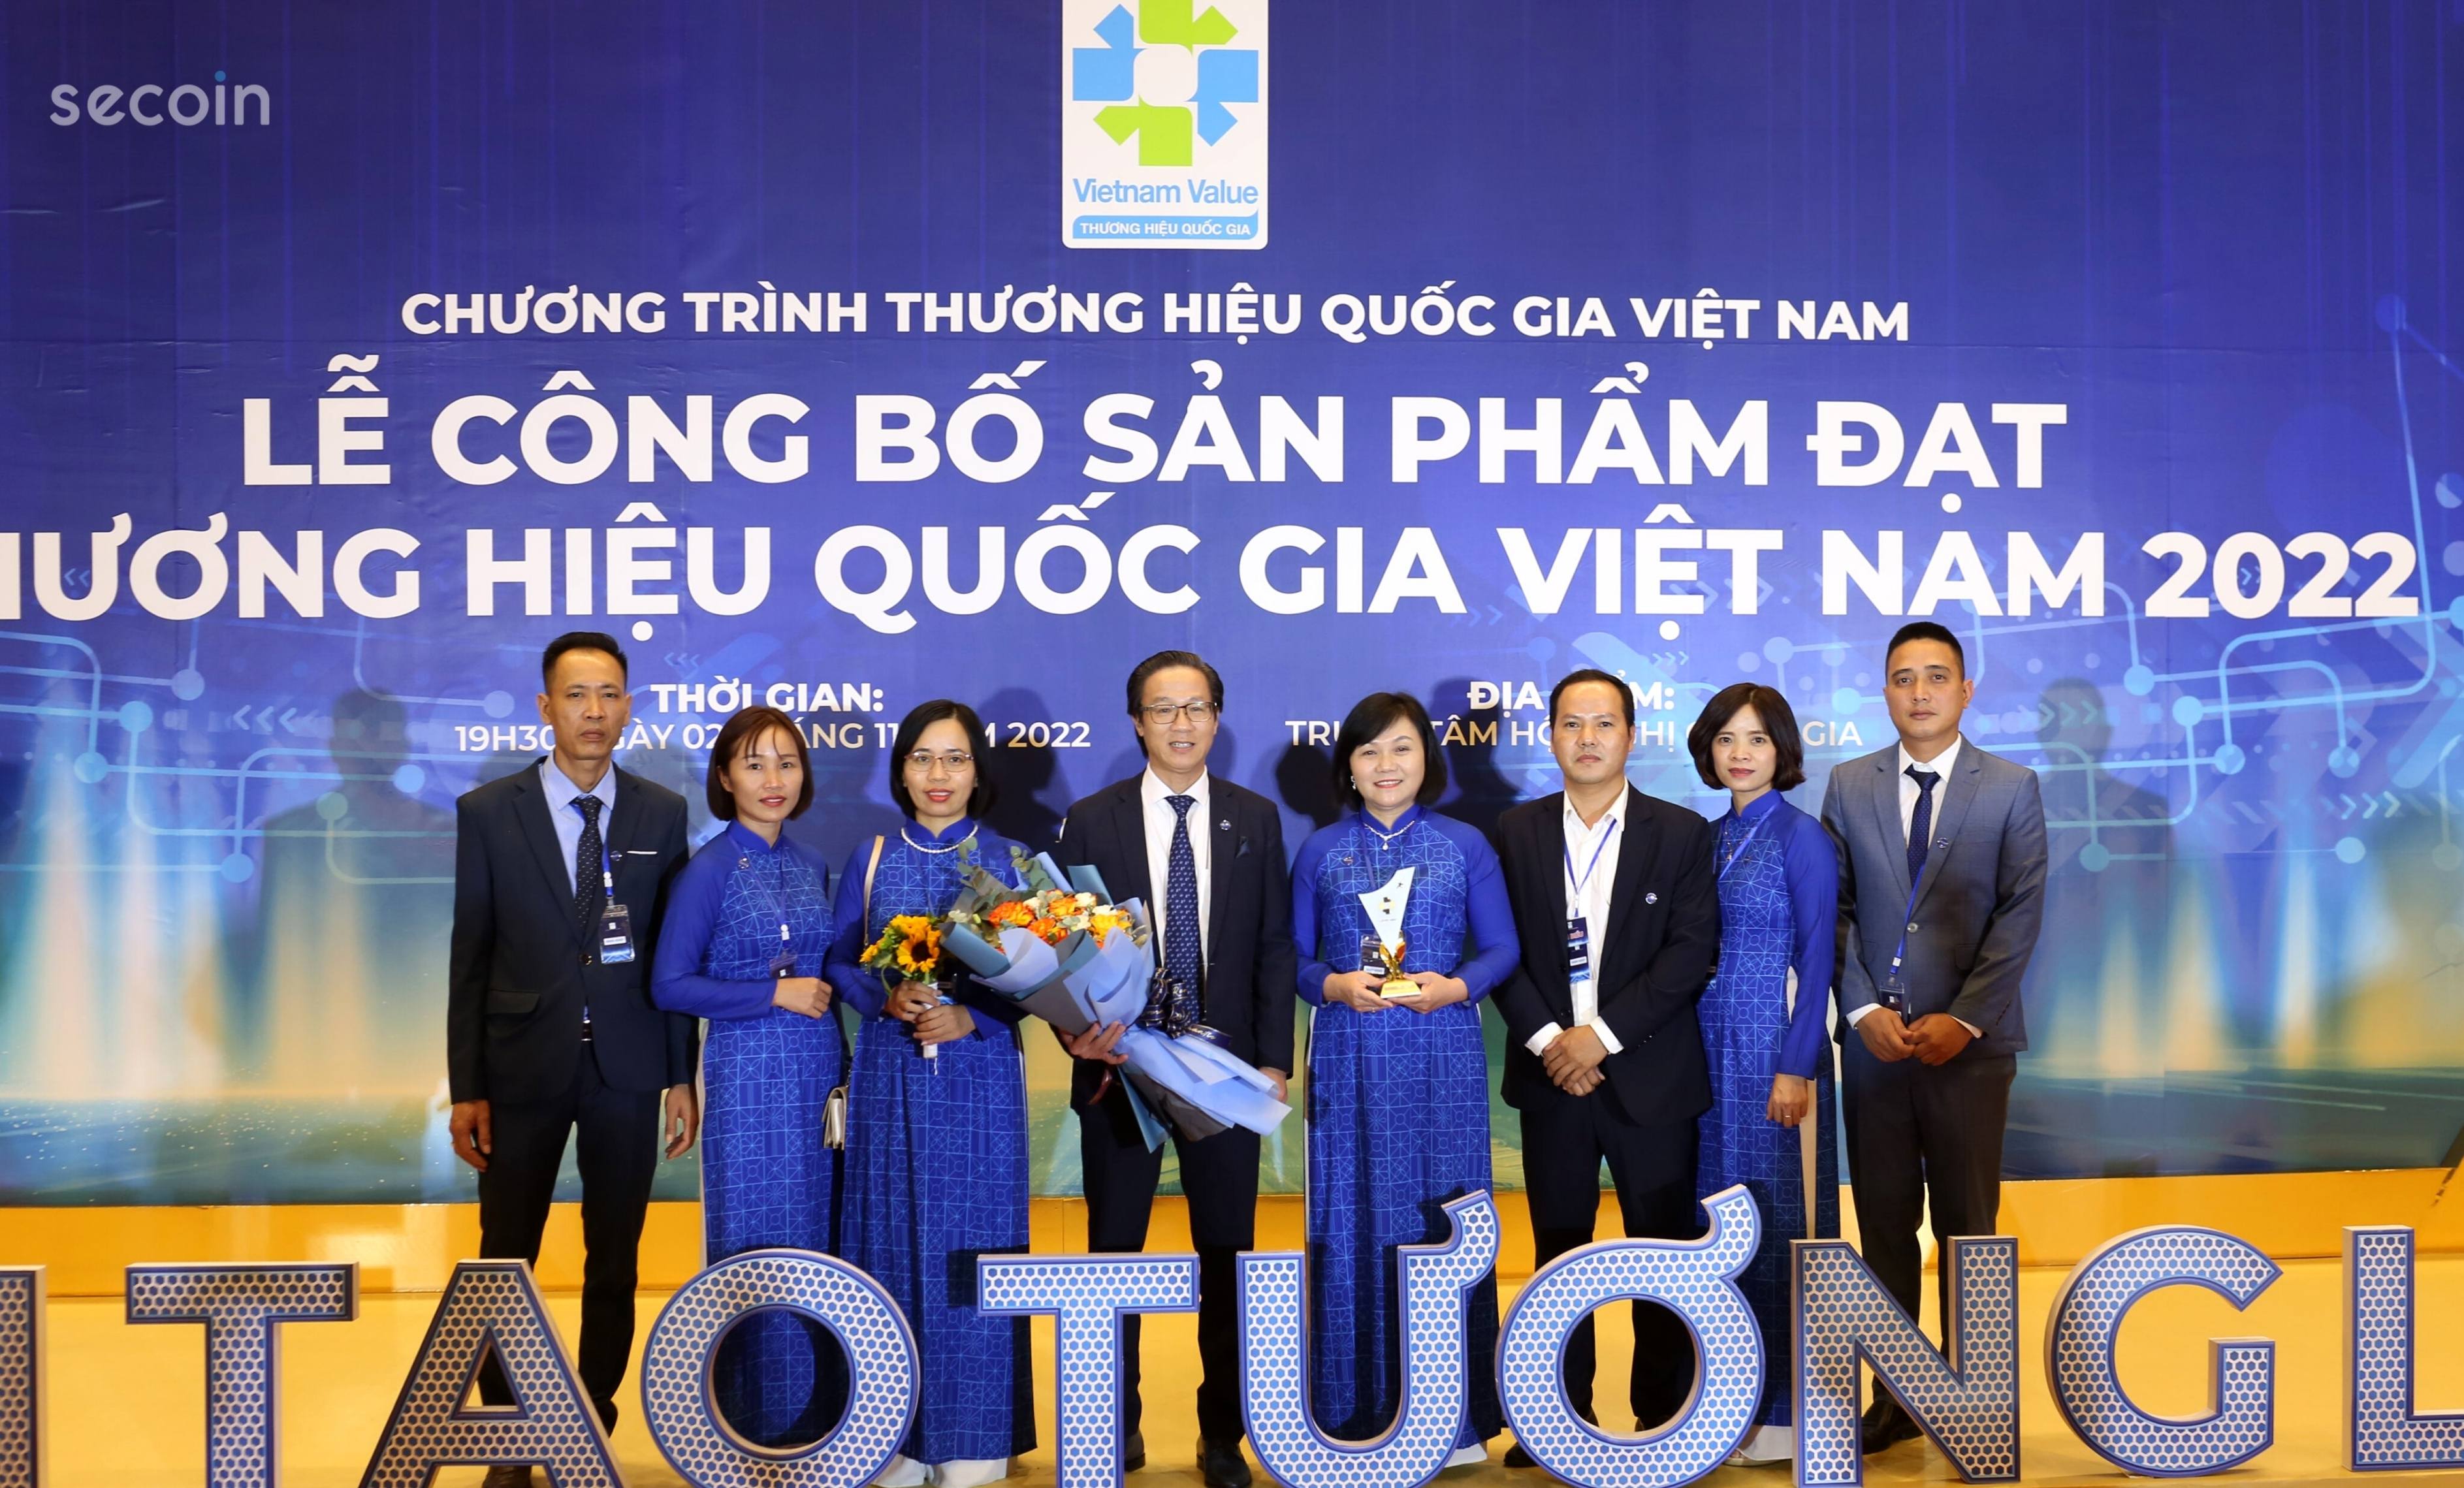 Secoin vinh dự được công nhận “Thương hiệu Quốc gia” của Việt Nam giai đoạn 2022-2024